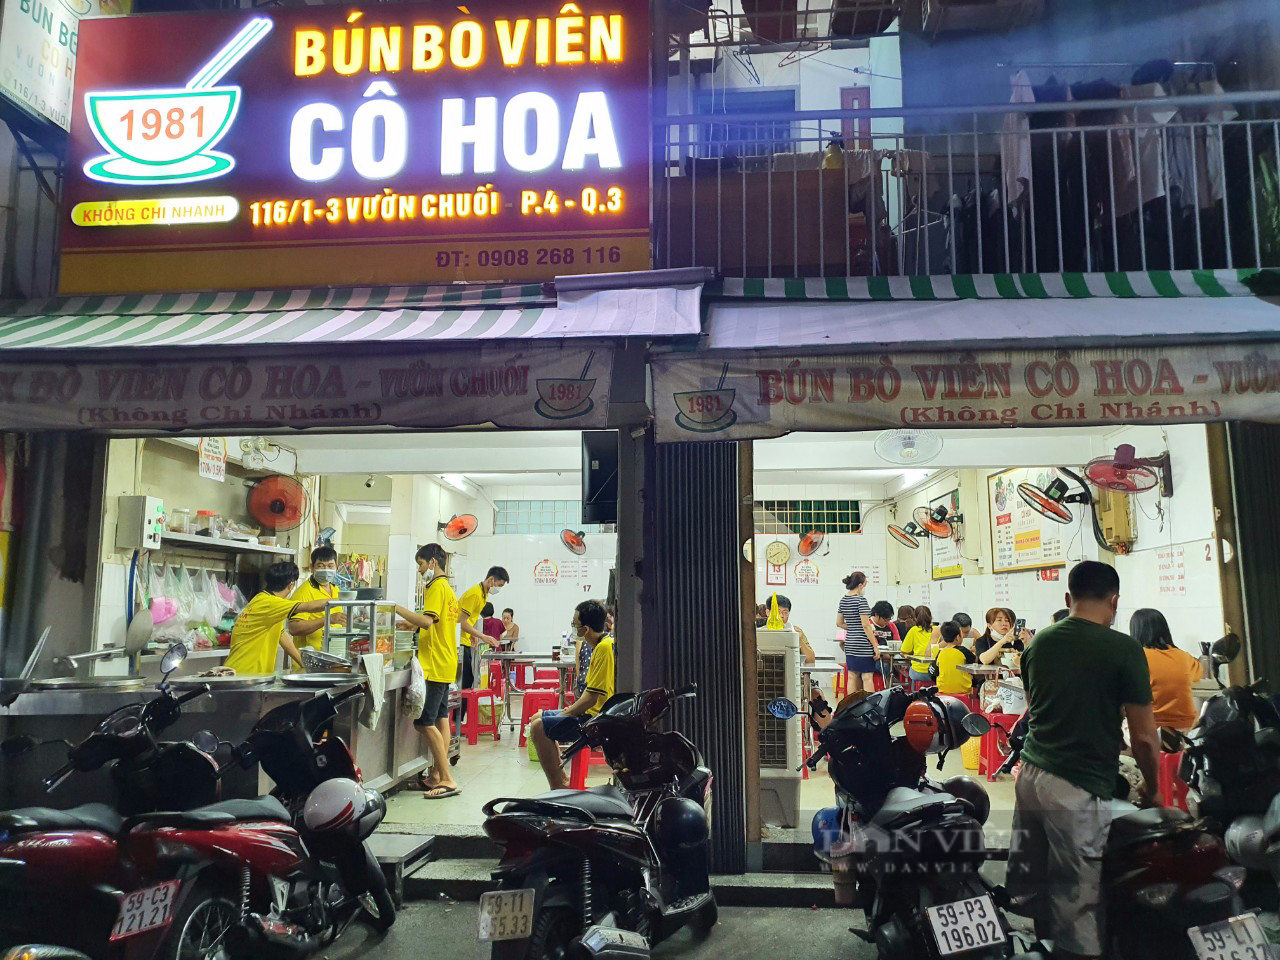 Bún bò viên Vườn Chuối ở Sài Gòn, món ăn nghe lạ lạ mà hút khách suốt 40 năm - Ảnh 1.